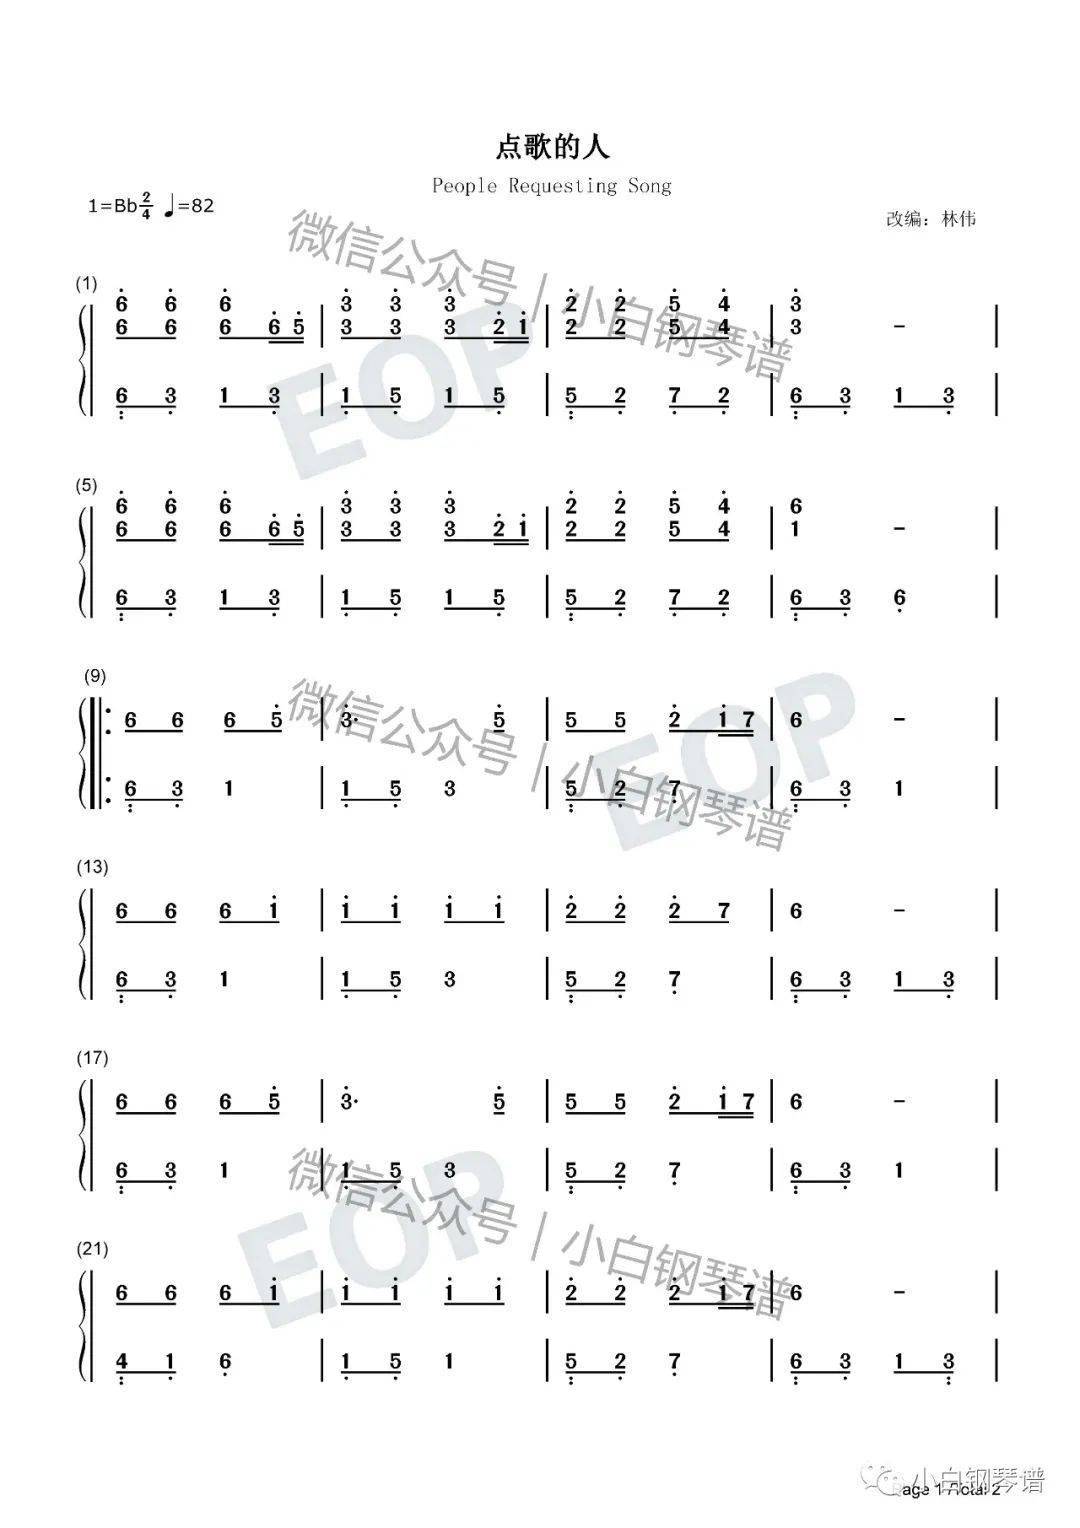 琴谱点歌的人海来阿木阿呷拉古抖音人的一生啊就一堆堆坎坷含简谱